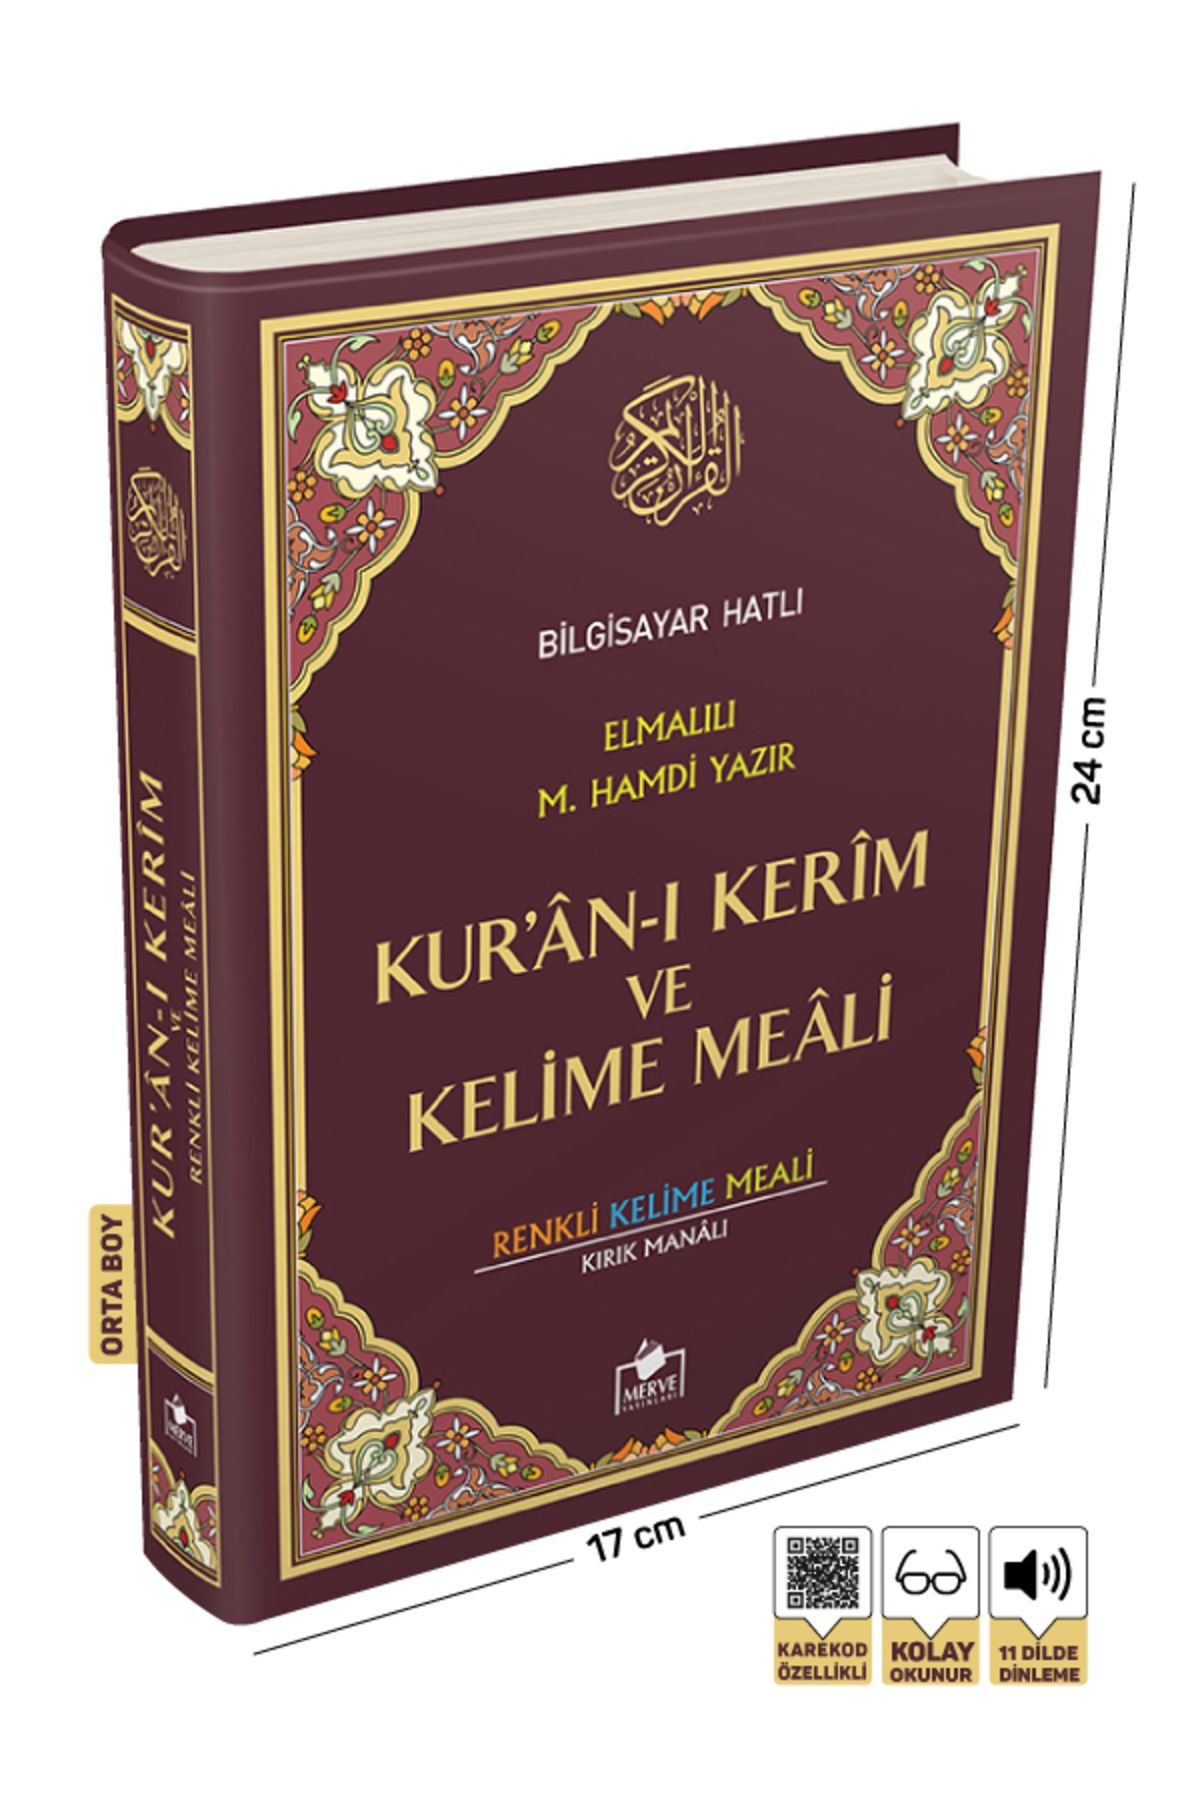 Merve Yayınları Kur'an-ı Kerim Ve Kelime Meali Bilgisayar Hatlı Orta Boy & Renkli Kelime Meali - Kırık Manalı